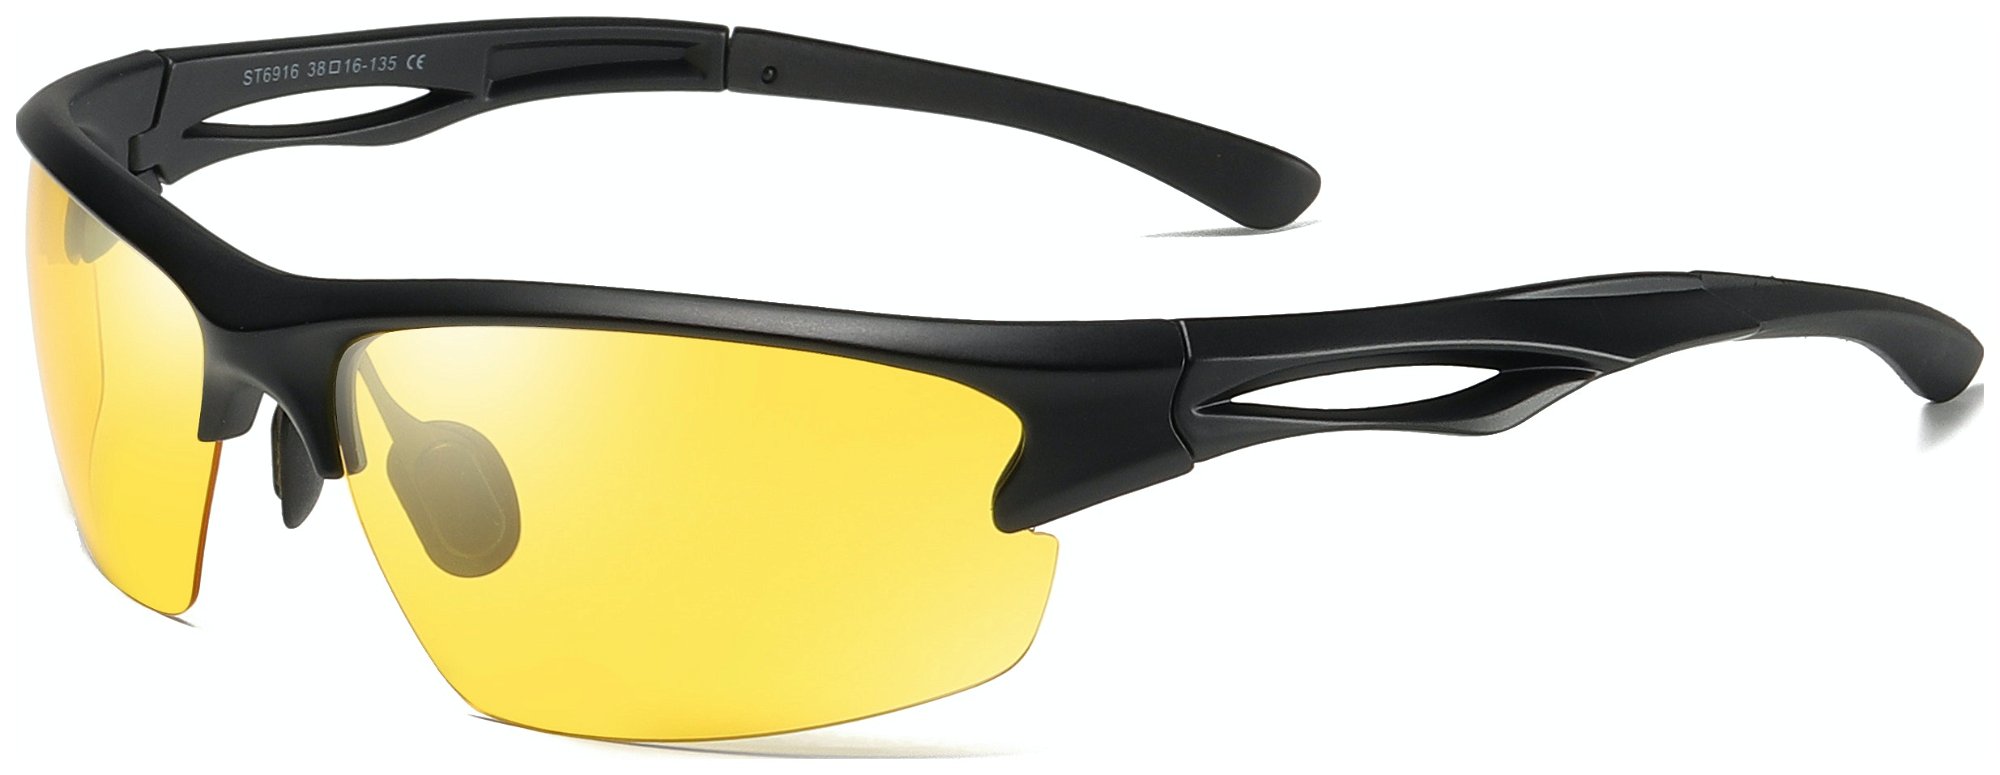 Billede af Sports solbriller til mænd, Drift by Kaleu (H: 6,5 cm. x B: 1,6 cm. x L: 13,5 cm., Gul)